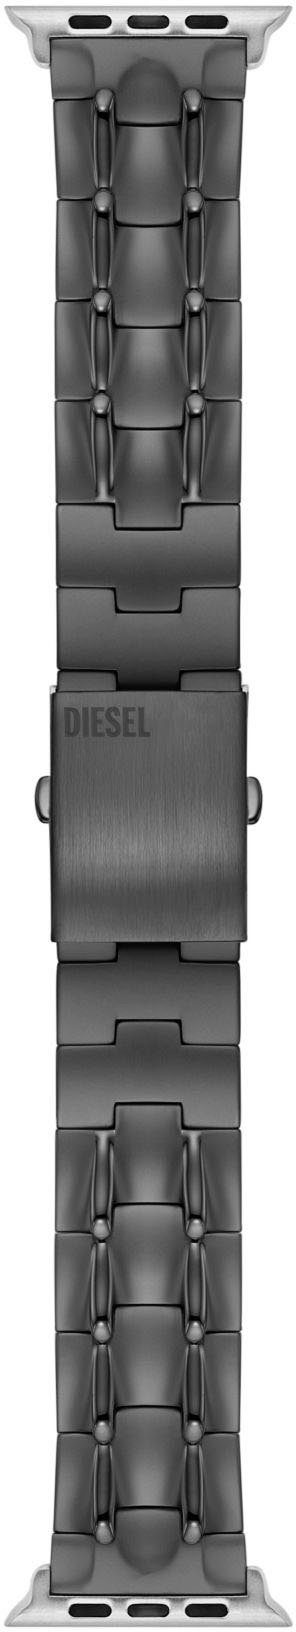 Diesel DSS0015, mm, mm, Smartwatch-Armband Apple 42 als Geschenk mm, Strap, 45 auch ideal 44